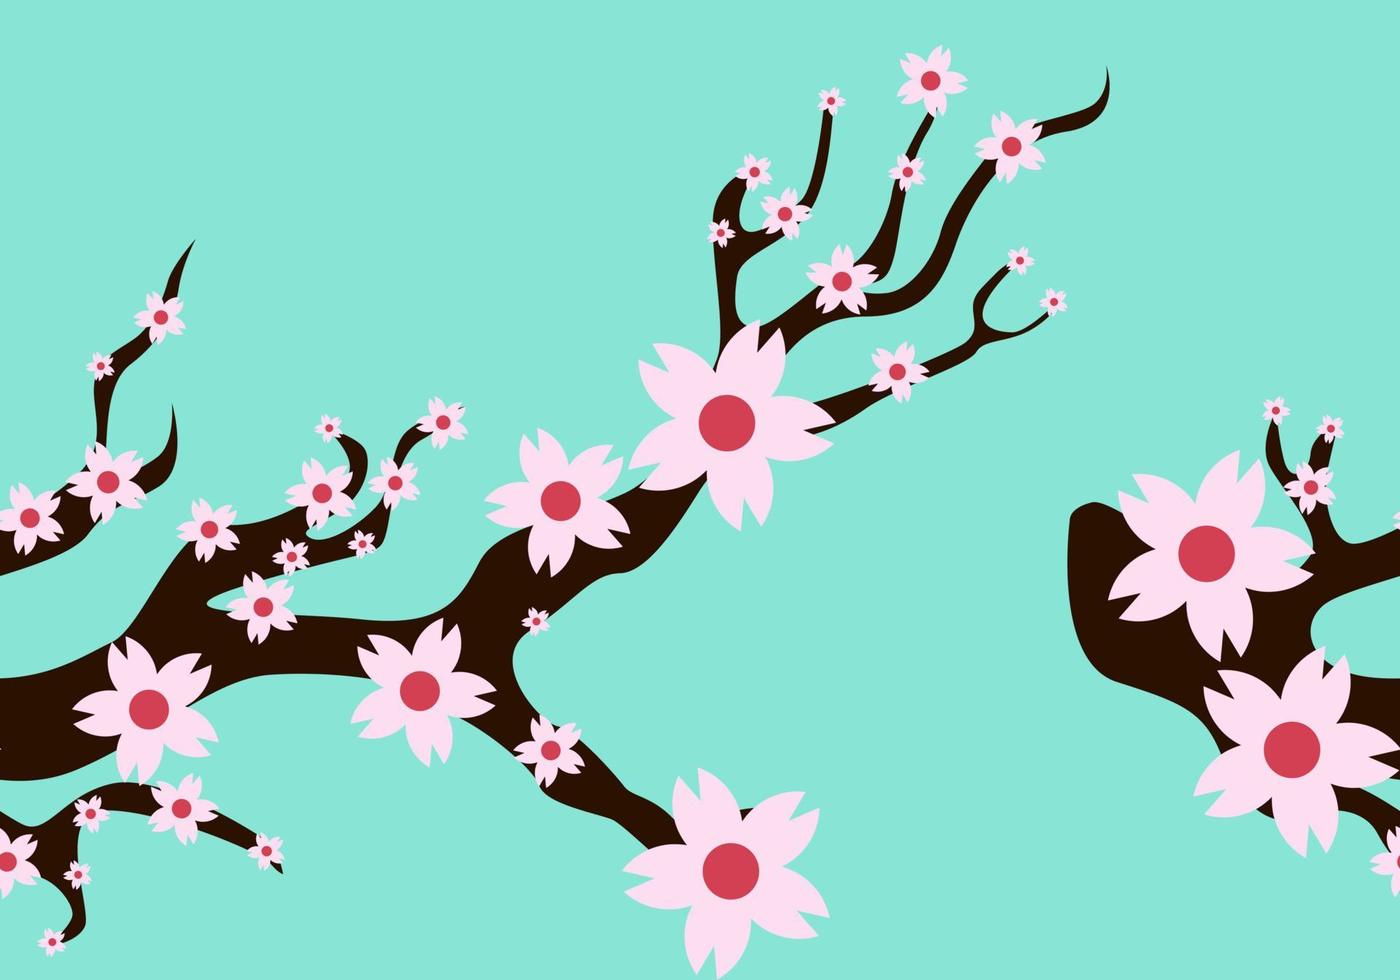 kersenbloesem, lente bloementuin vectorillustratie op tosca achtergrond, Japanse sakura bloemen esthetische en vaporwave stijl. vector